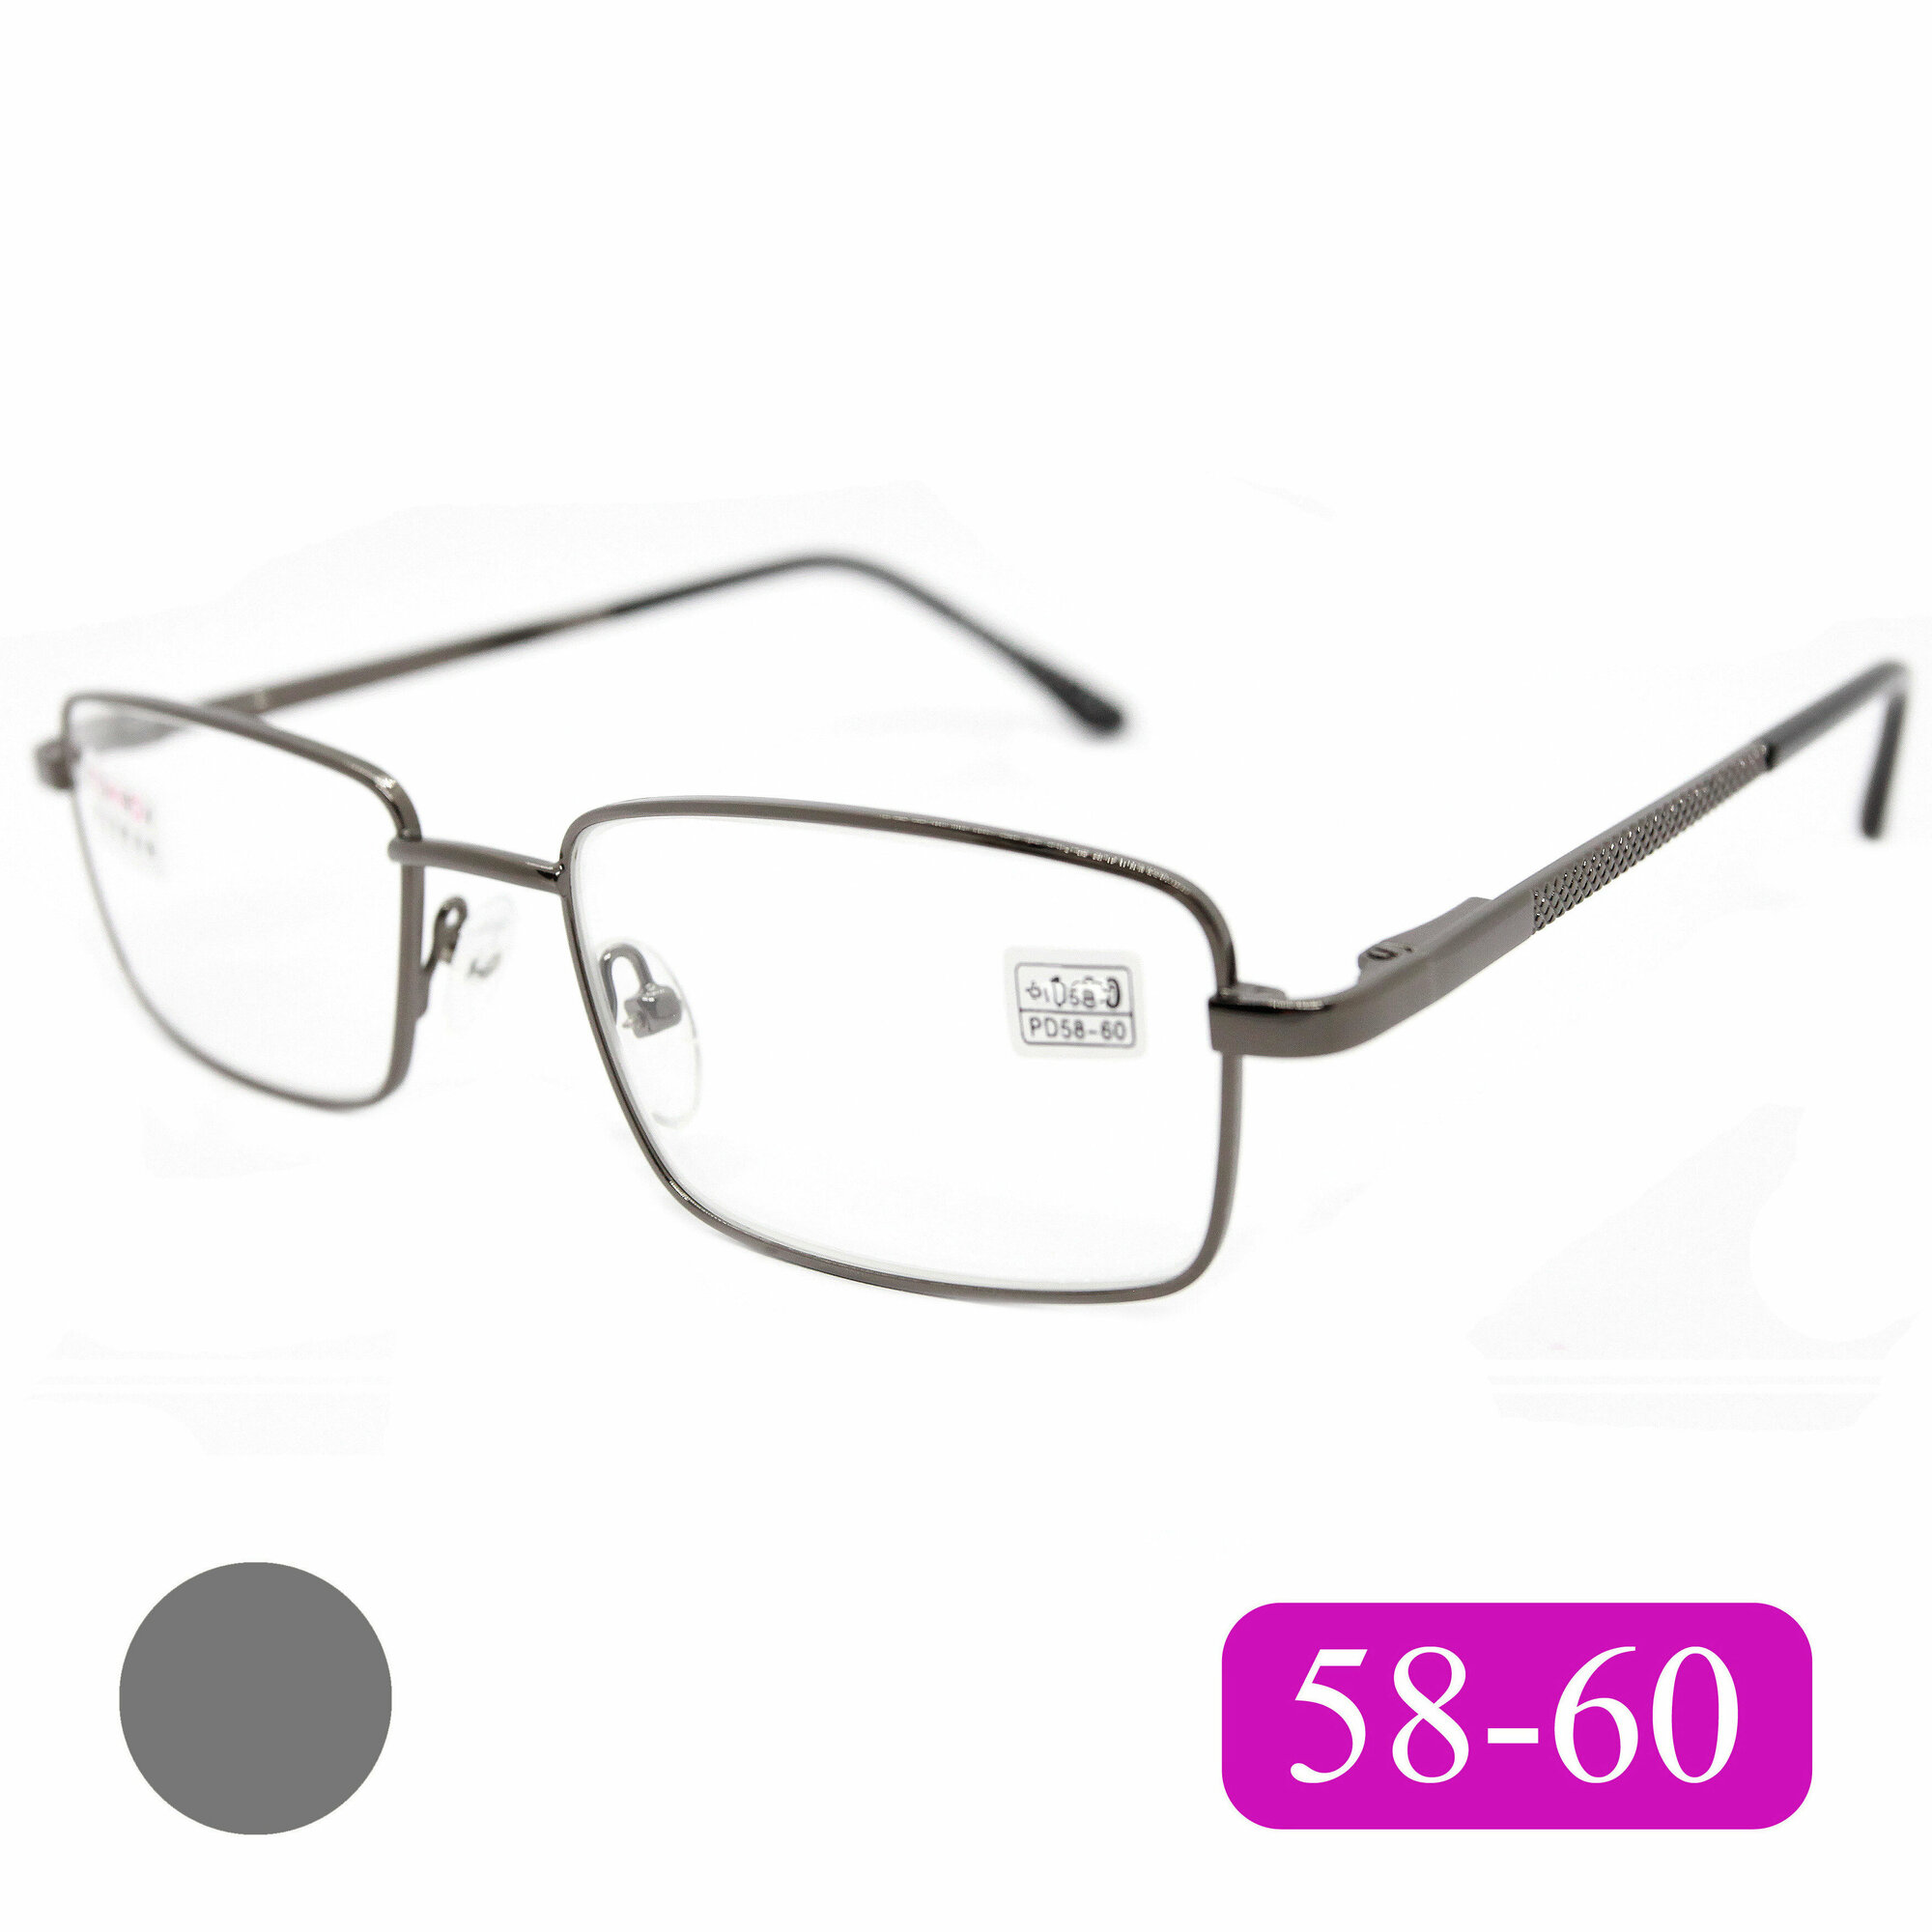 Очки расстояние 58-60 (+2.50) Fedrov 569 C2, цвет серый, линза стекло, без футляра, РЦ 58-60